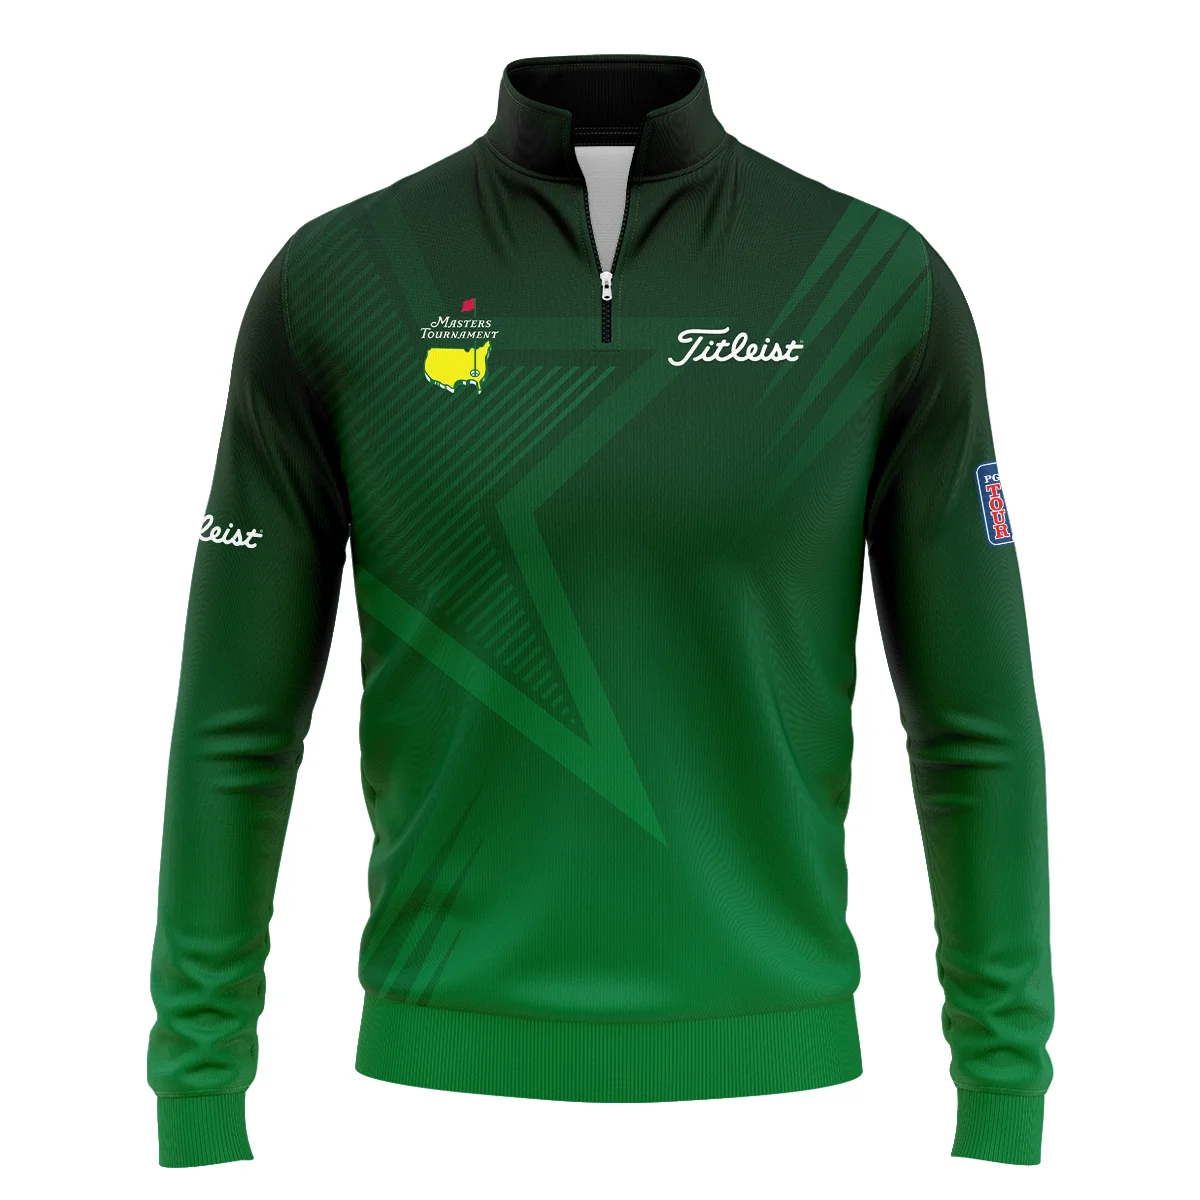 Titleist Masters Tournament Quarter-Zip Jacket Dark Green Gradient Star Pattern Golf Sports Quarter-Zip Jacket